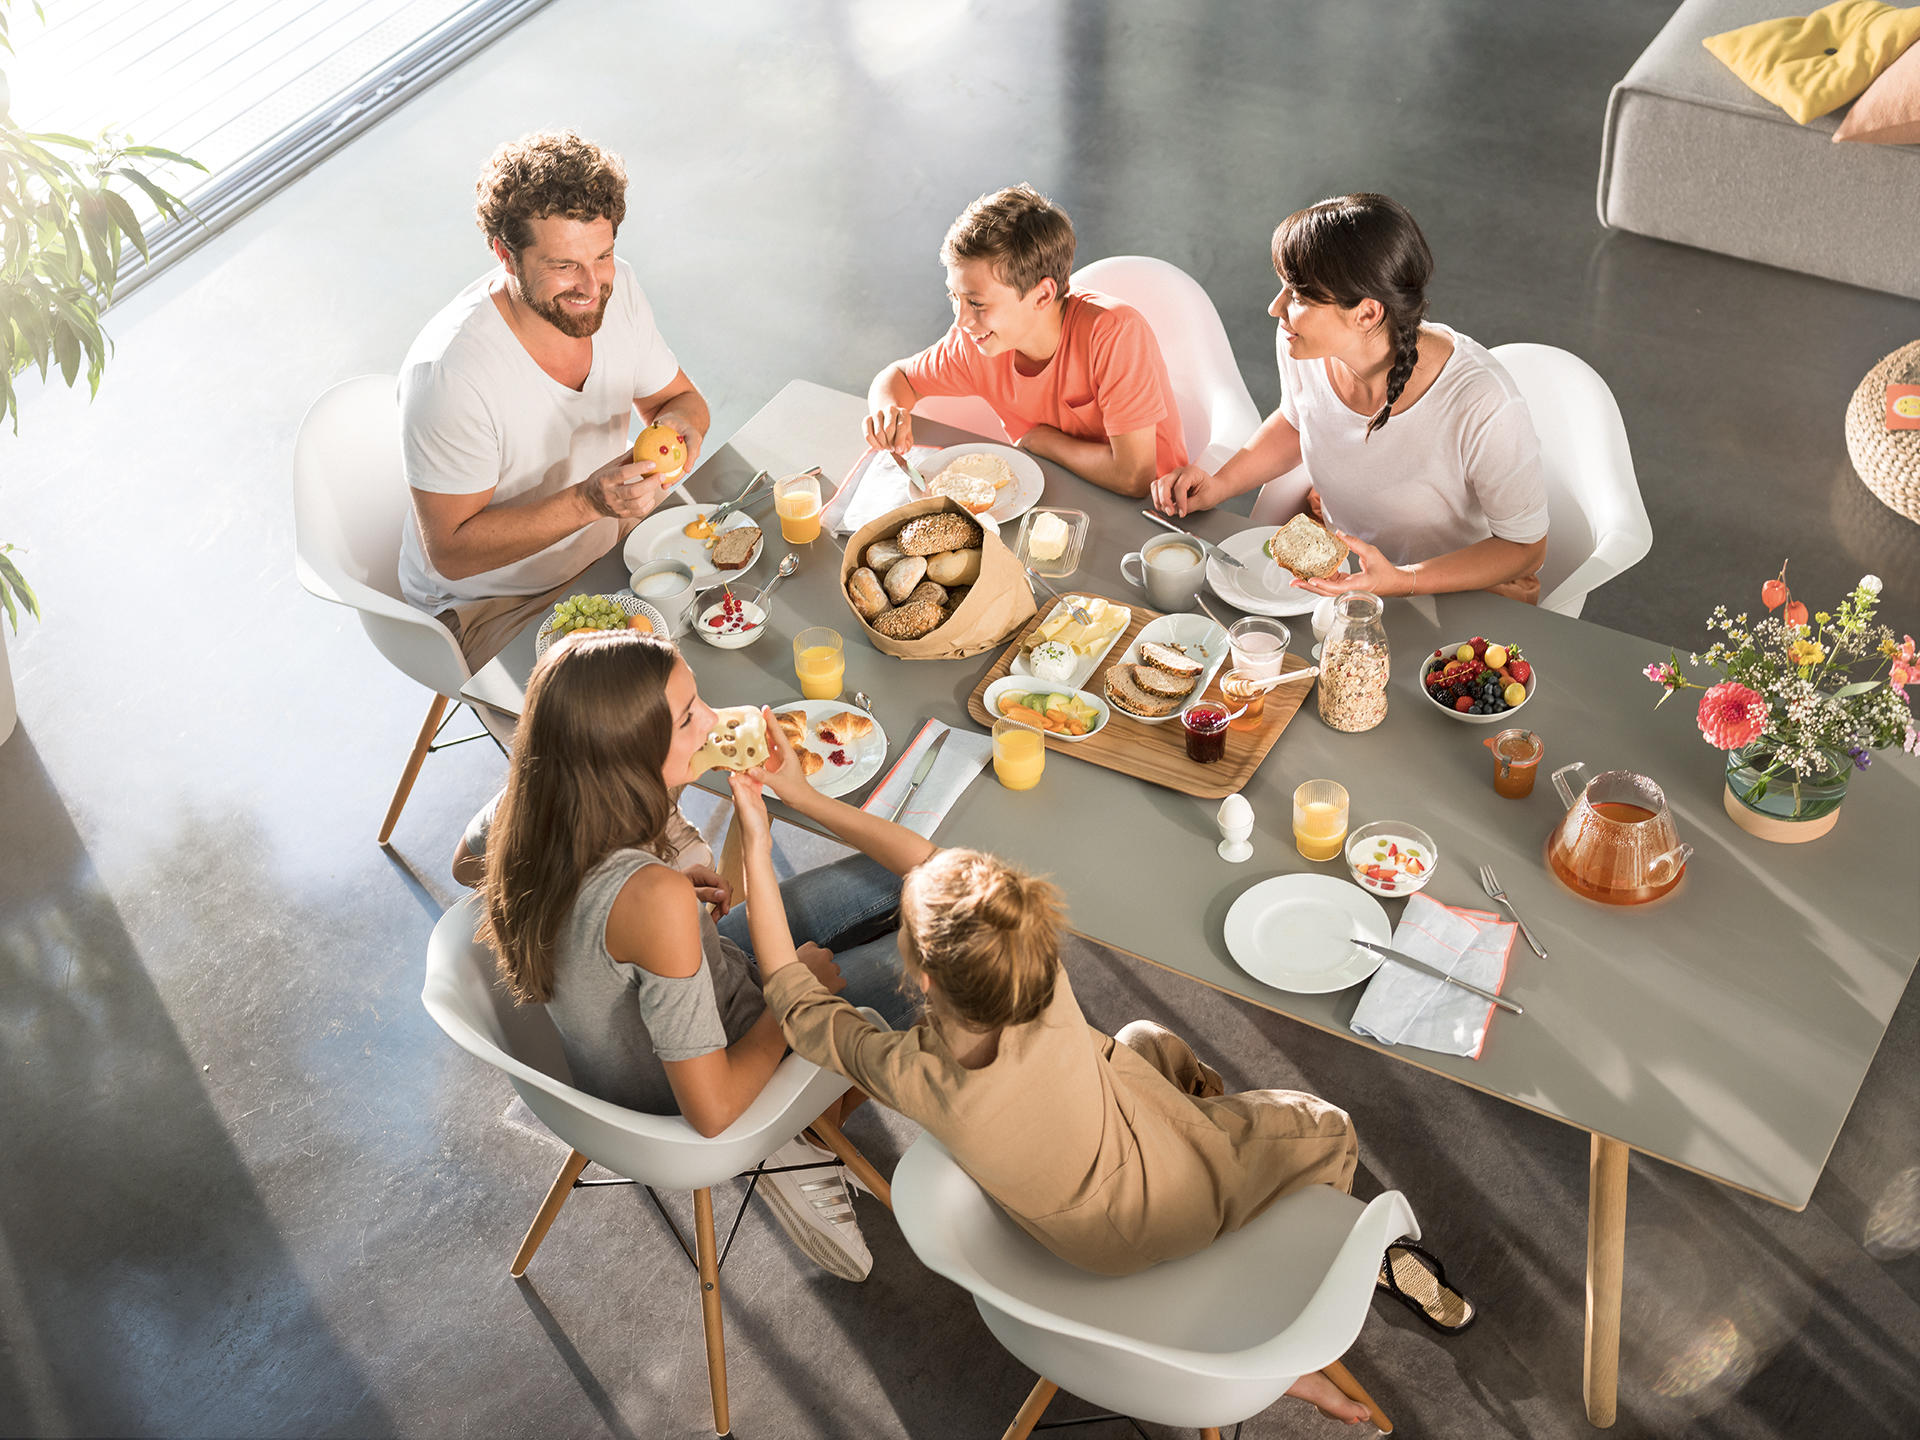 Morgengold Frühstückdienste ist Ihr Brötchenlieferservice in Saarbrücken, Homburg, Neuenkirchen-Saar, Illingen, Tholey und Umgebung. Wir liefern Ihnen frische Brötchen direkt an die Haustüre - auch an Sonntagen und Feiertagen. 

Frühstück bestellen, Frühs